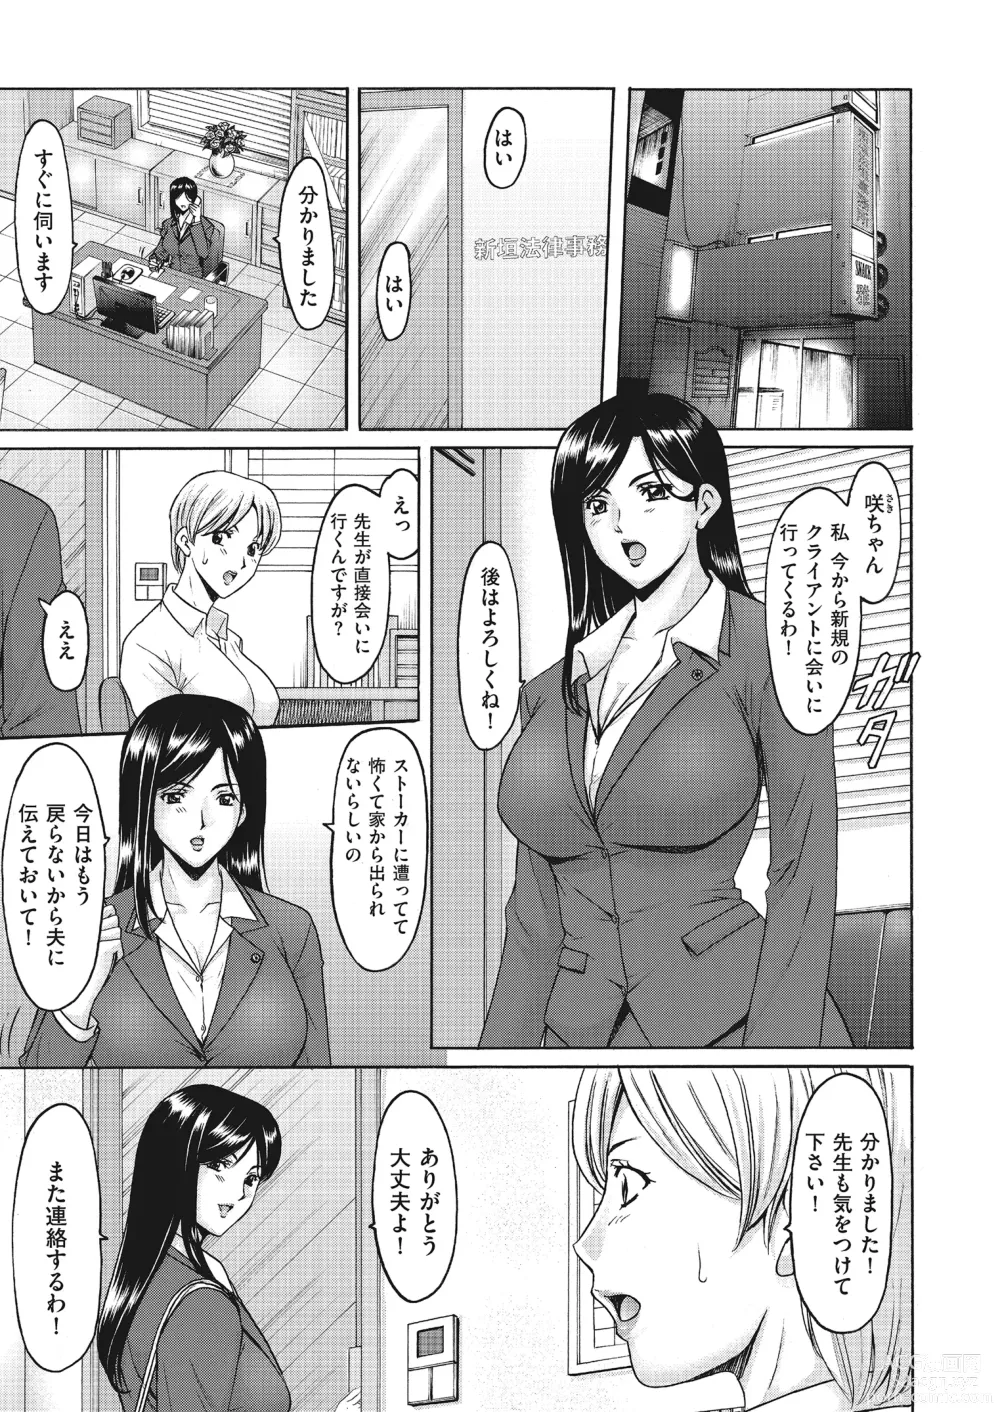 Page 29 of manga Kouin okasareta huuhu no kizuna Ch.1-3